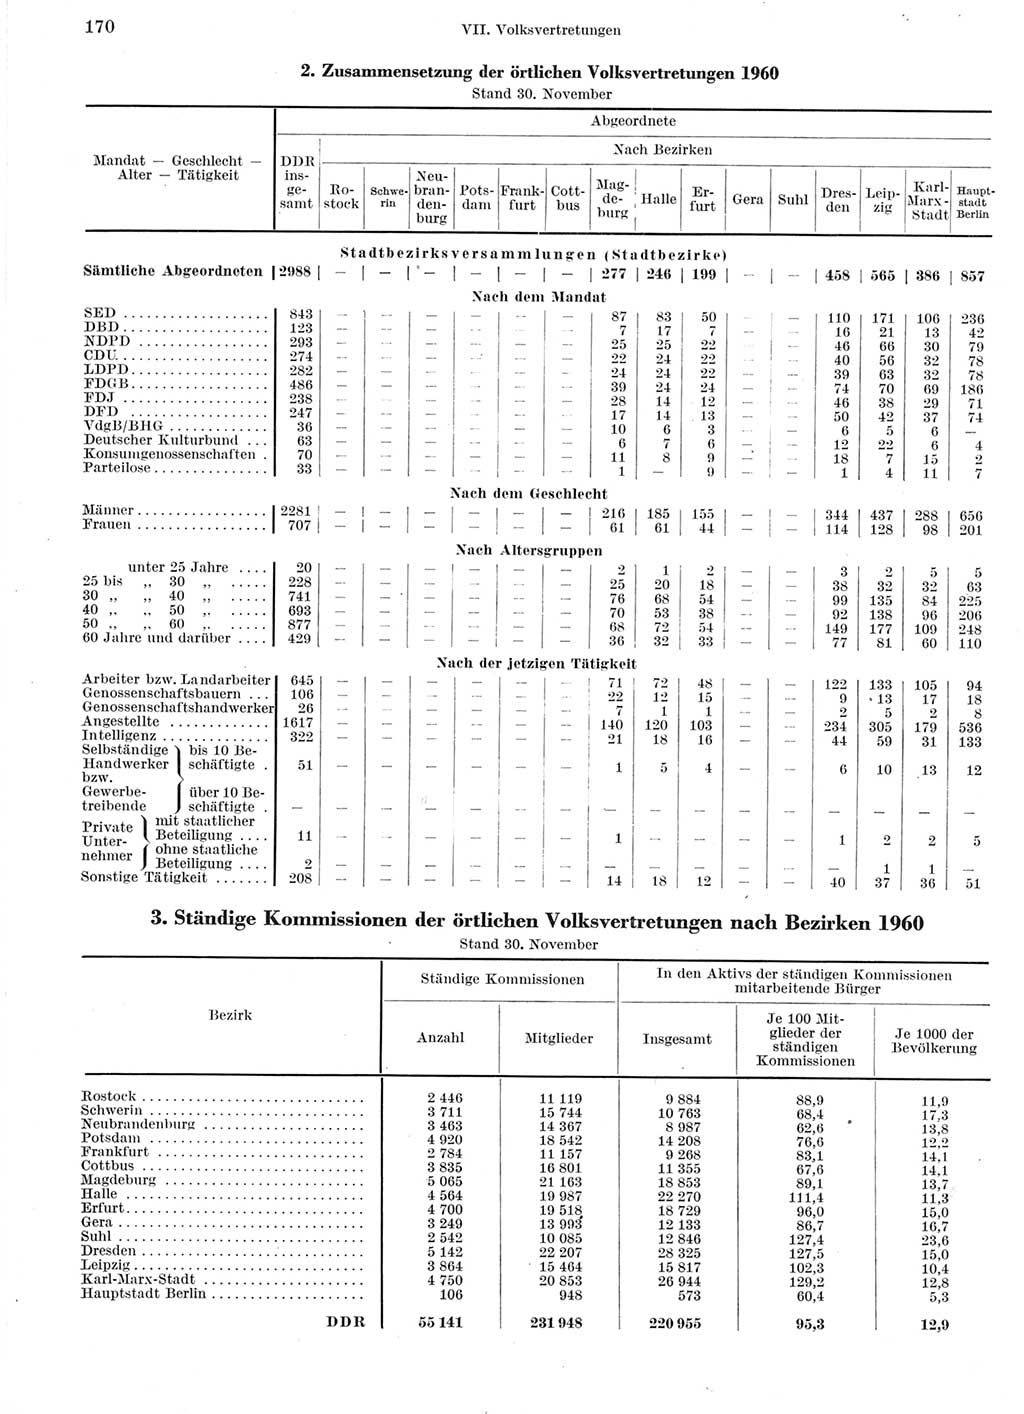 Statistisches Jahrbuch der Deutschen Demokratischen Republik (DDR) 1960-1961, Seite 170 (Stat. Jb. DDR 1960-1961, S. 170)